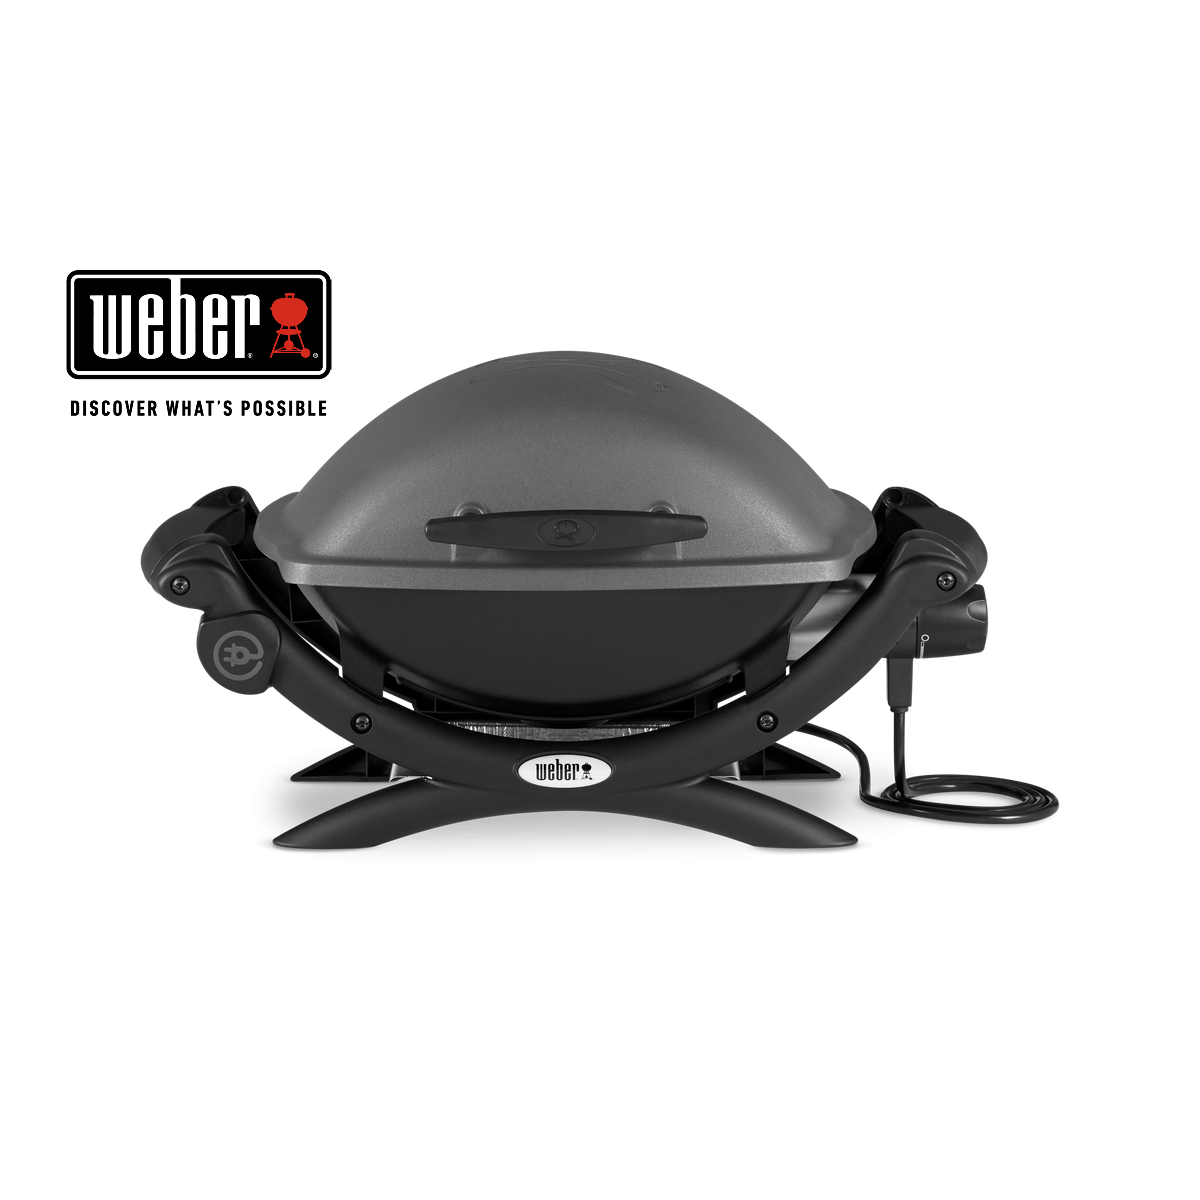 WEBER Q 1400 electrik grill, 52020053